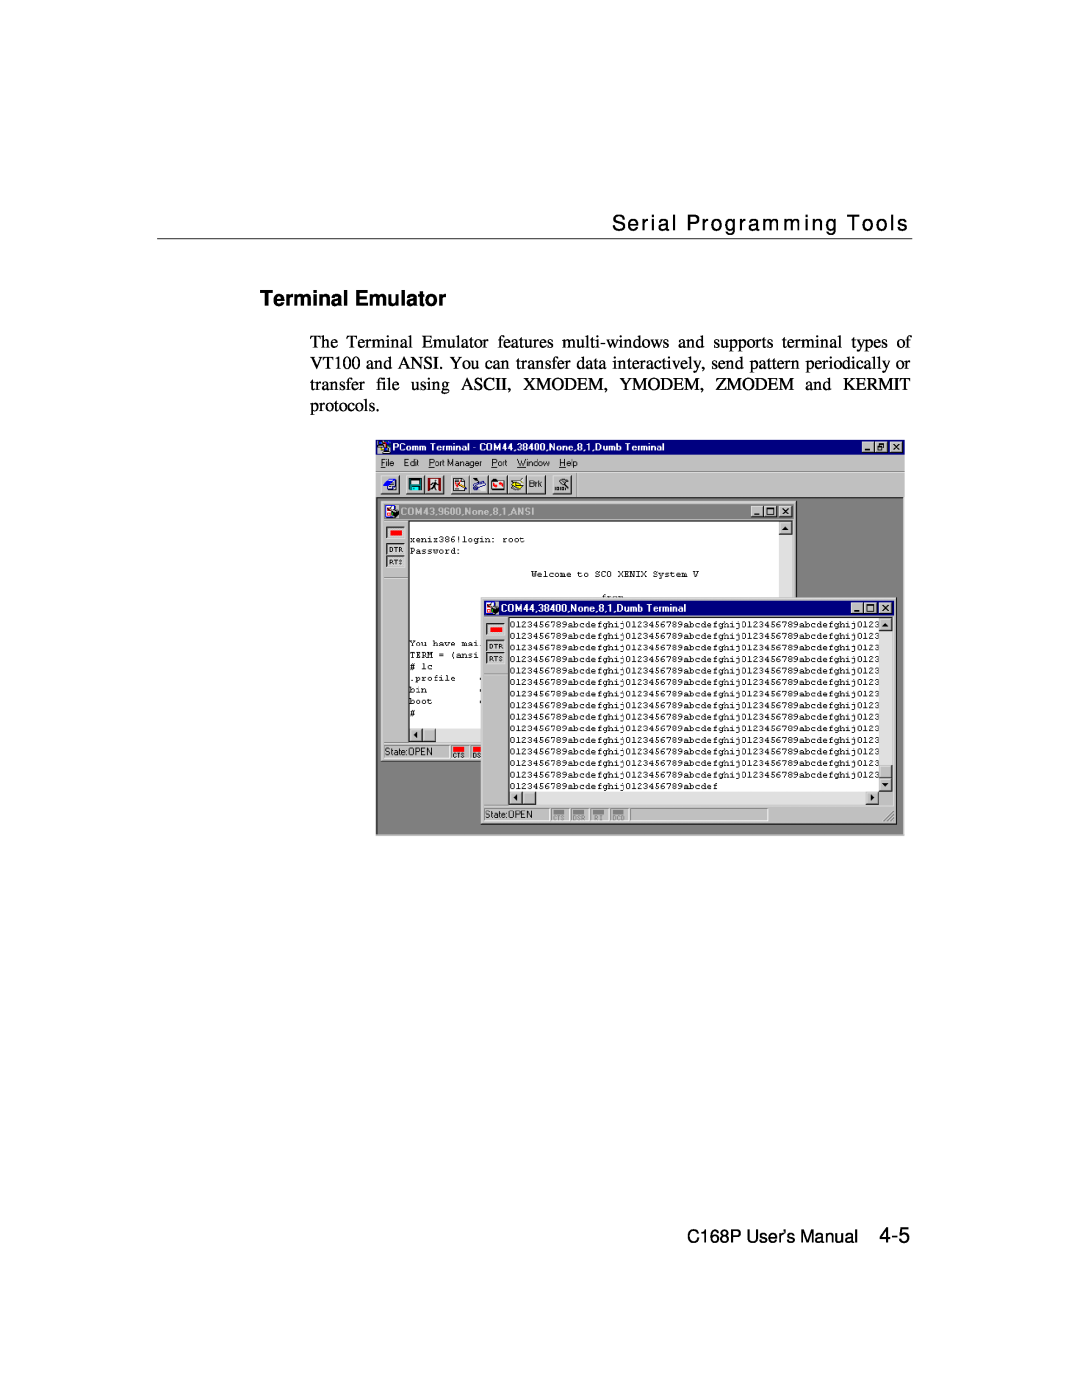 Moxa Technologies user manual Terminal Emulator, Serial Programming Tools, C168P User’s Manual 